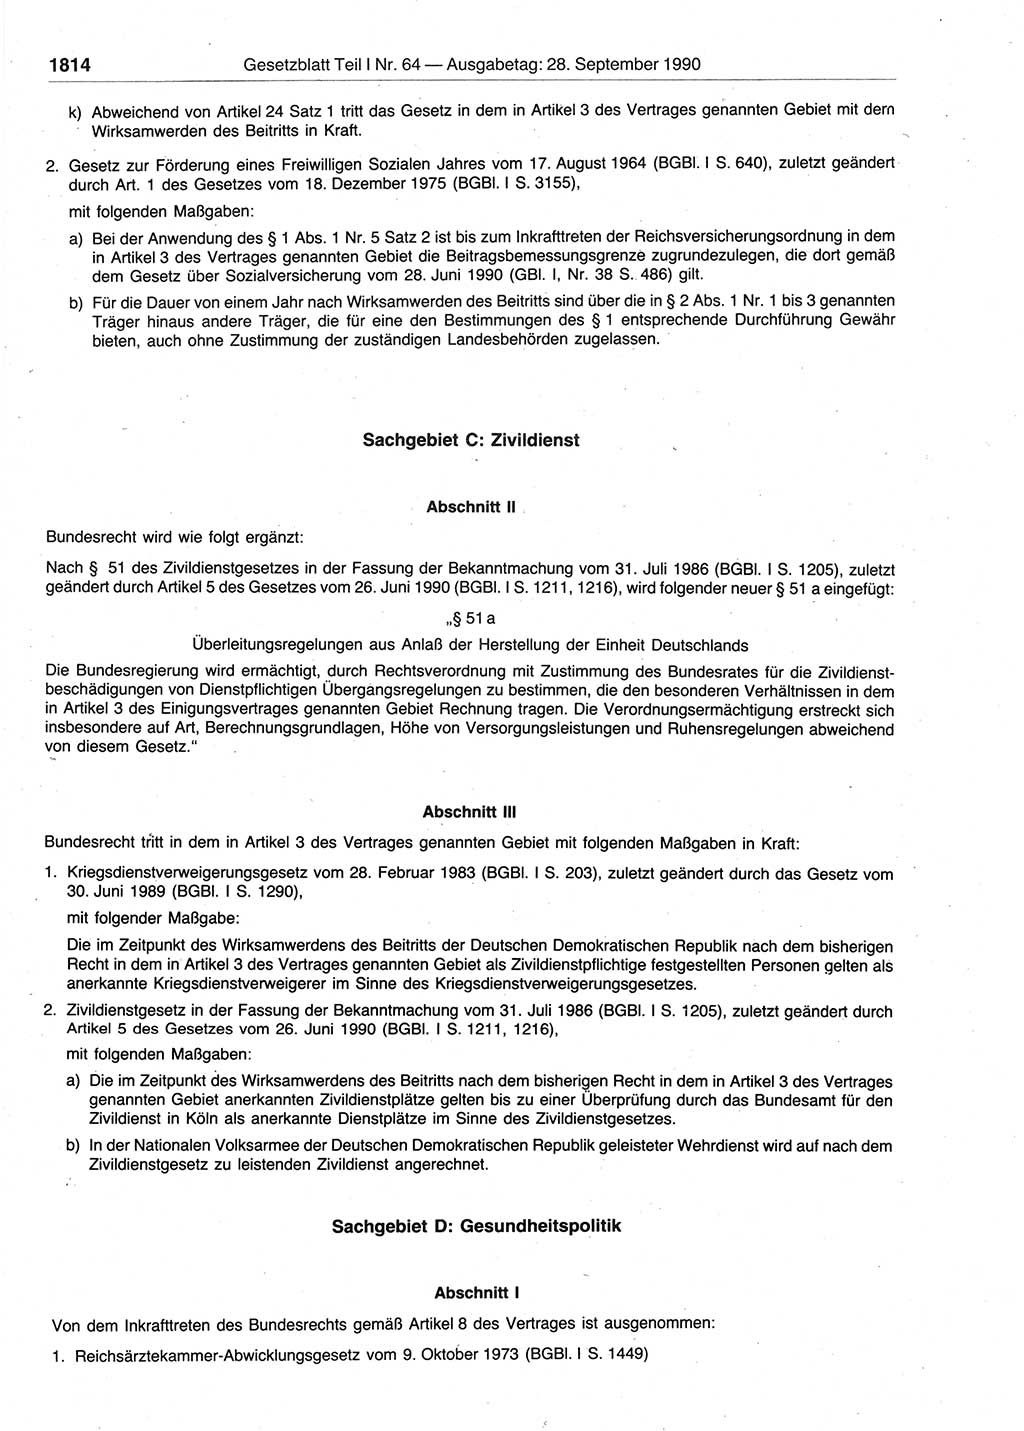 Gesetzblatt (GBl.) der Deutschen Demokratischen Republik (DDR) Teil Ⅰ 1990, Seite 1814 (GBl. DDR Ⅰ 1990, S. 1814)